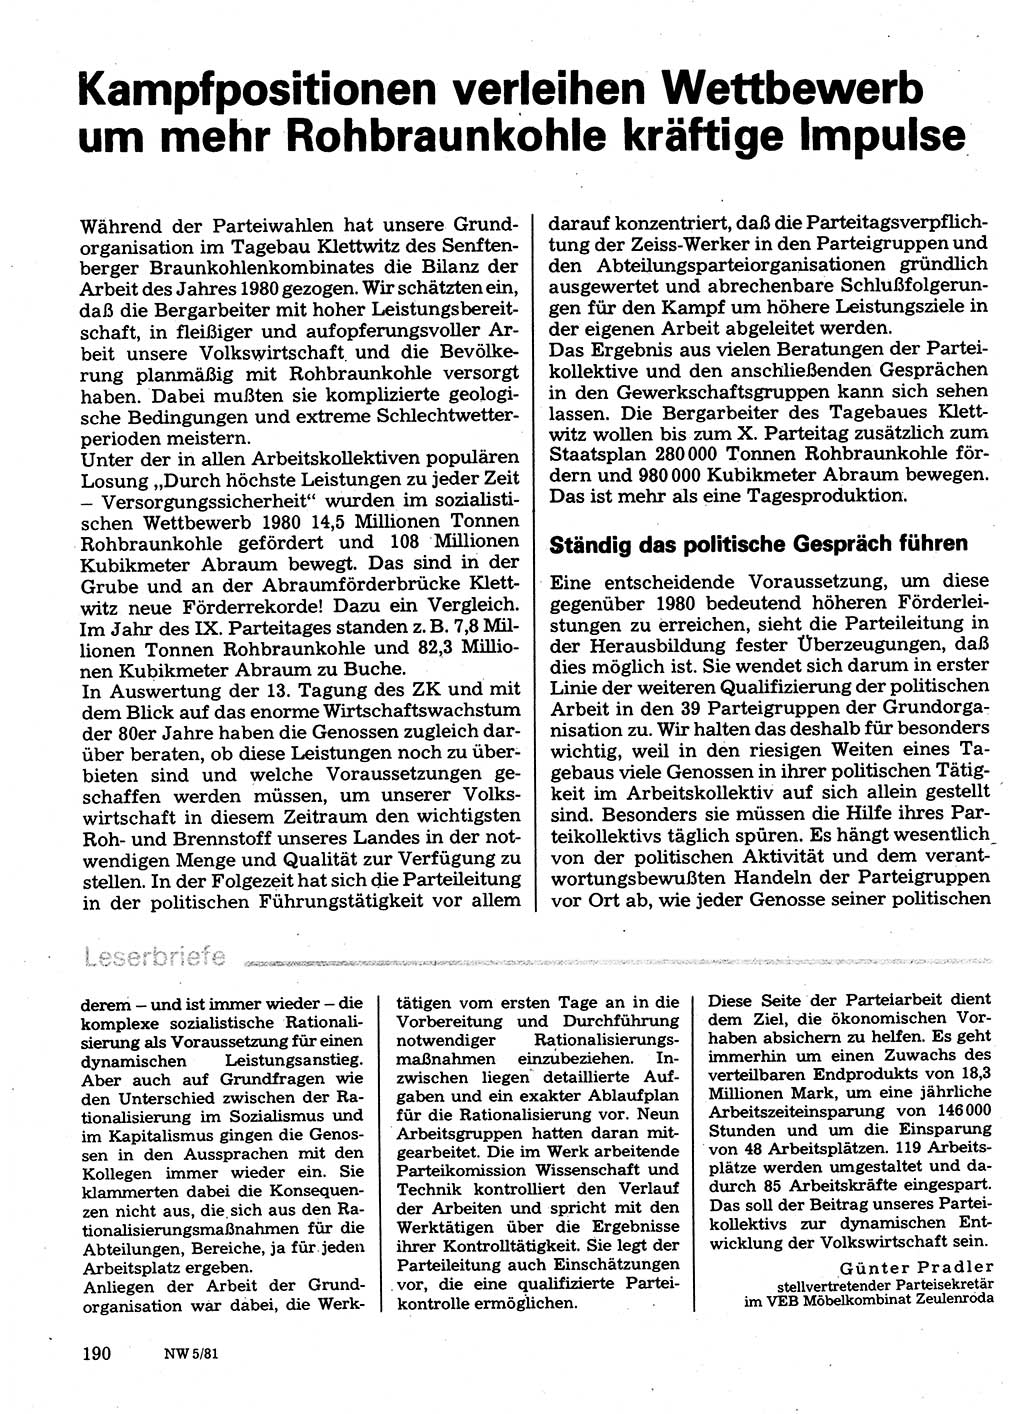 Neuer Weg (NW), Organ des Zentralkomitees (ZK) der SED (Sozialistische Einheitspartei Deutschlands) für Fragen des Parteilebens, 36. Jahrgang [Deutsche Demokratische Republik (DDR)] 1981, Seite 190 (NW ZK SED DDR 1981, S. 190)